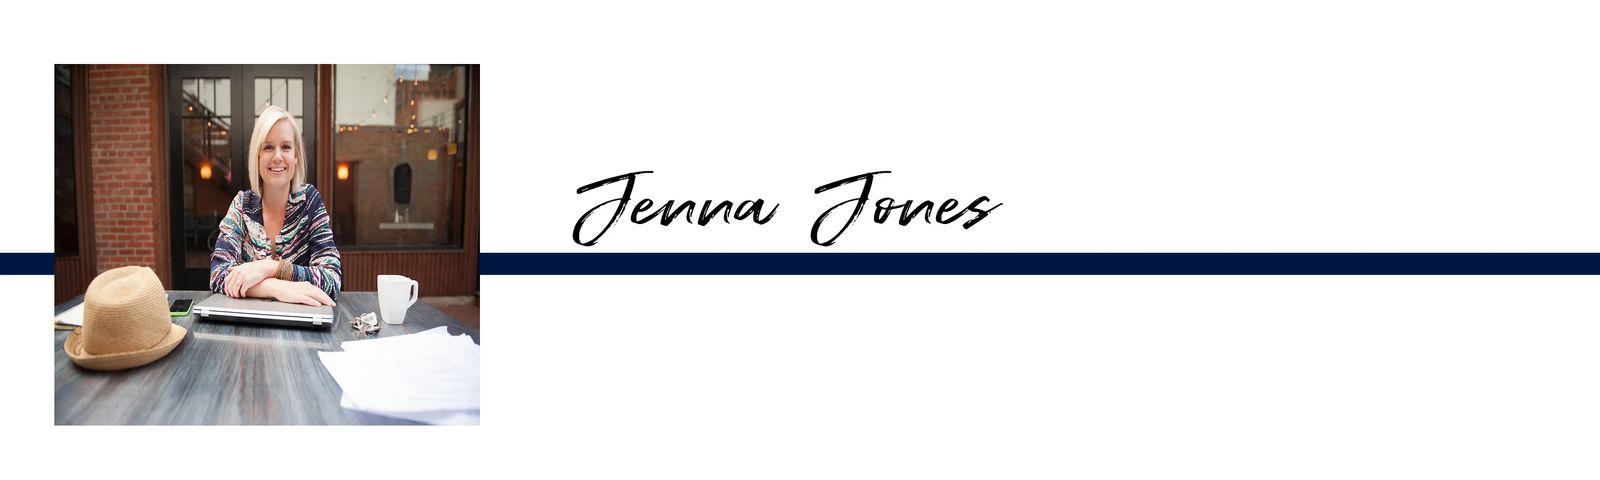 Jenna Jones